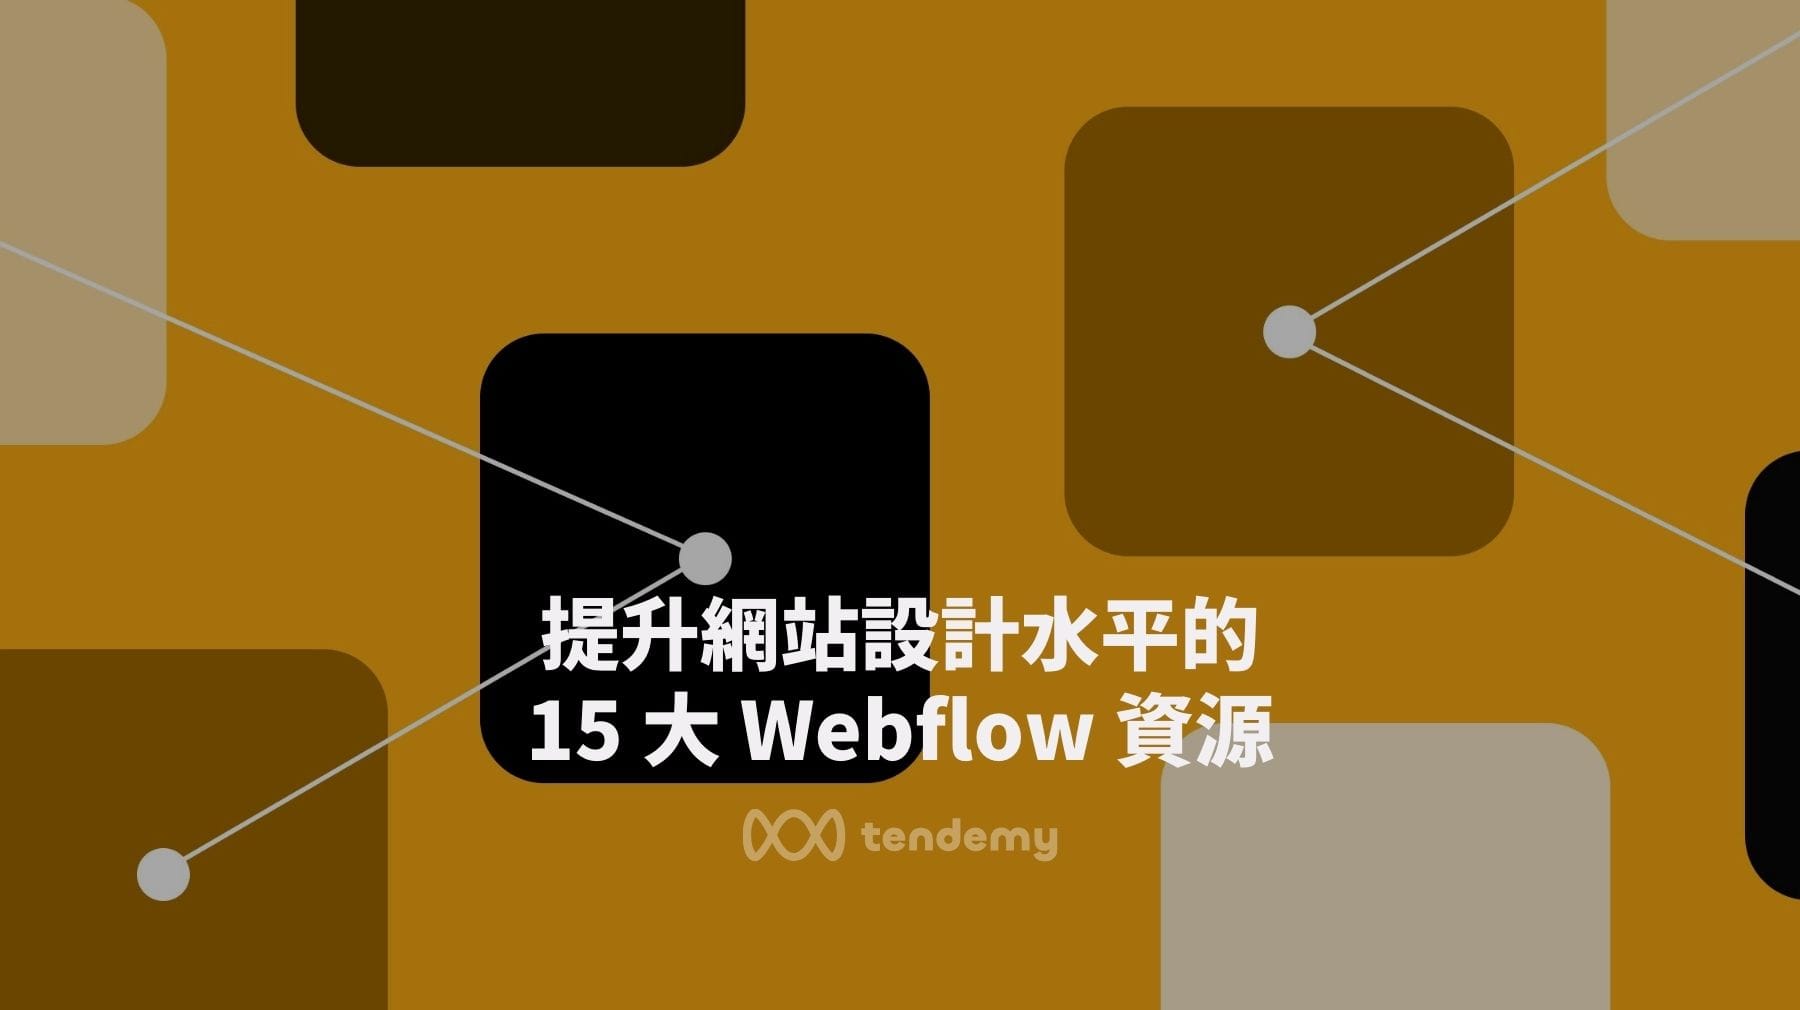 提升網站設計水平的 15 大 Webflow 資源